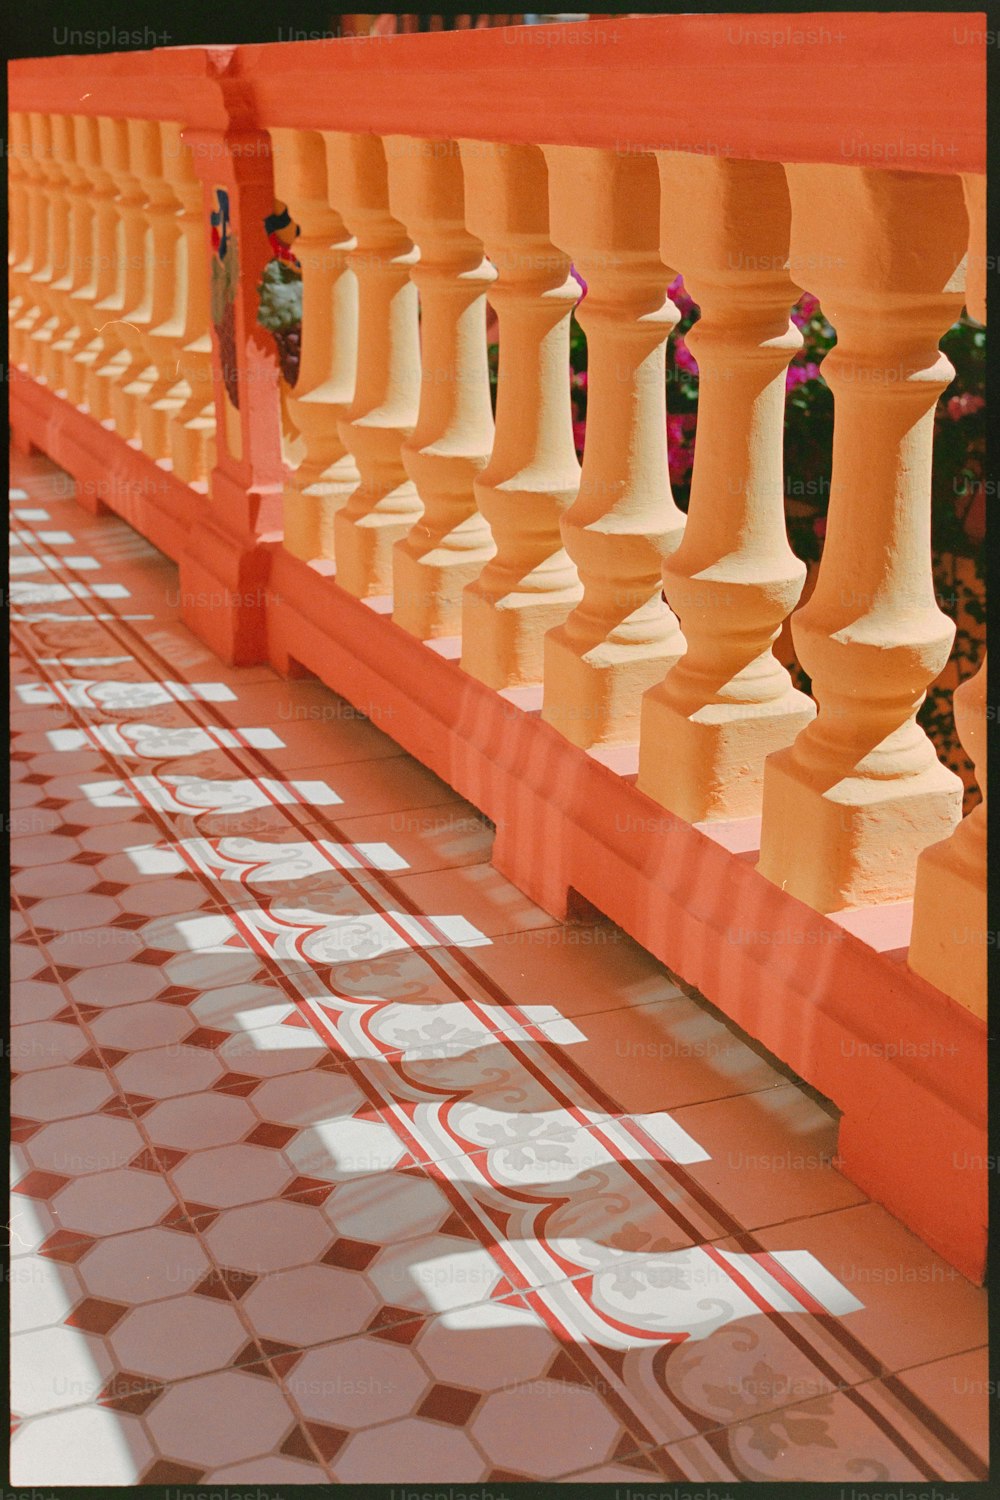 タイル張りの床にオレンジと白の柱が並ぶ